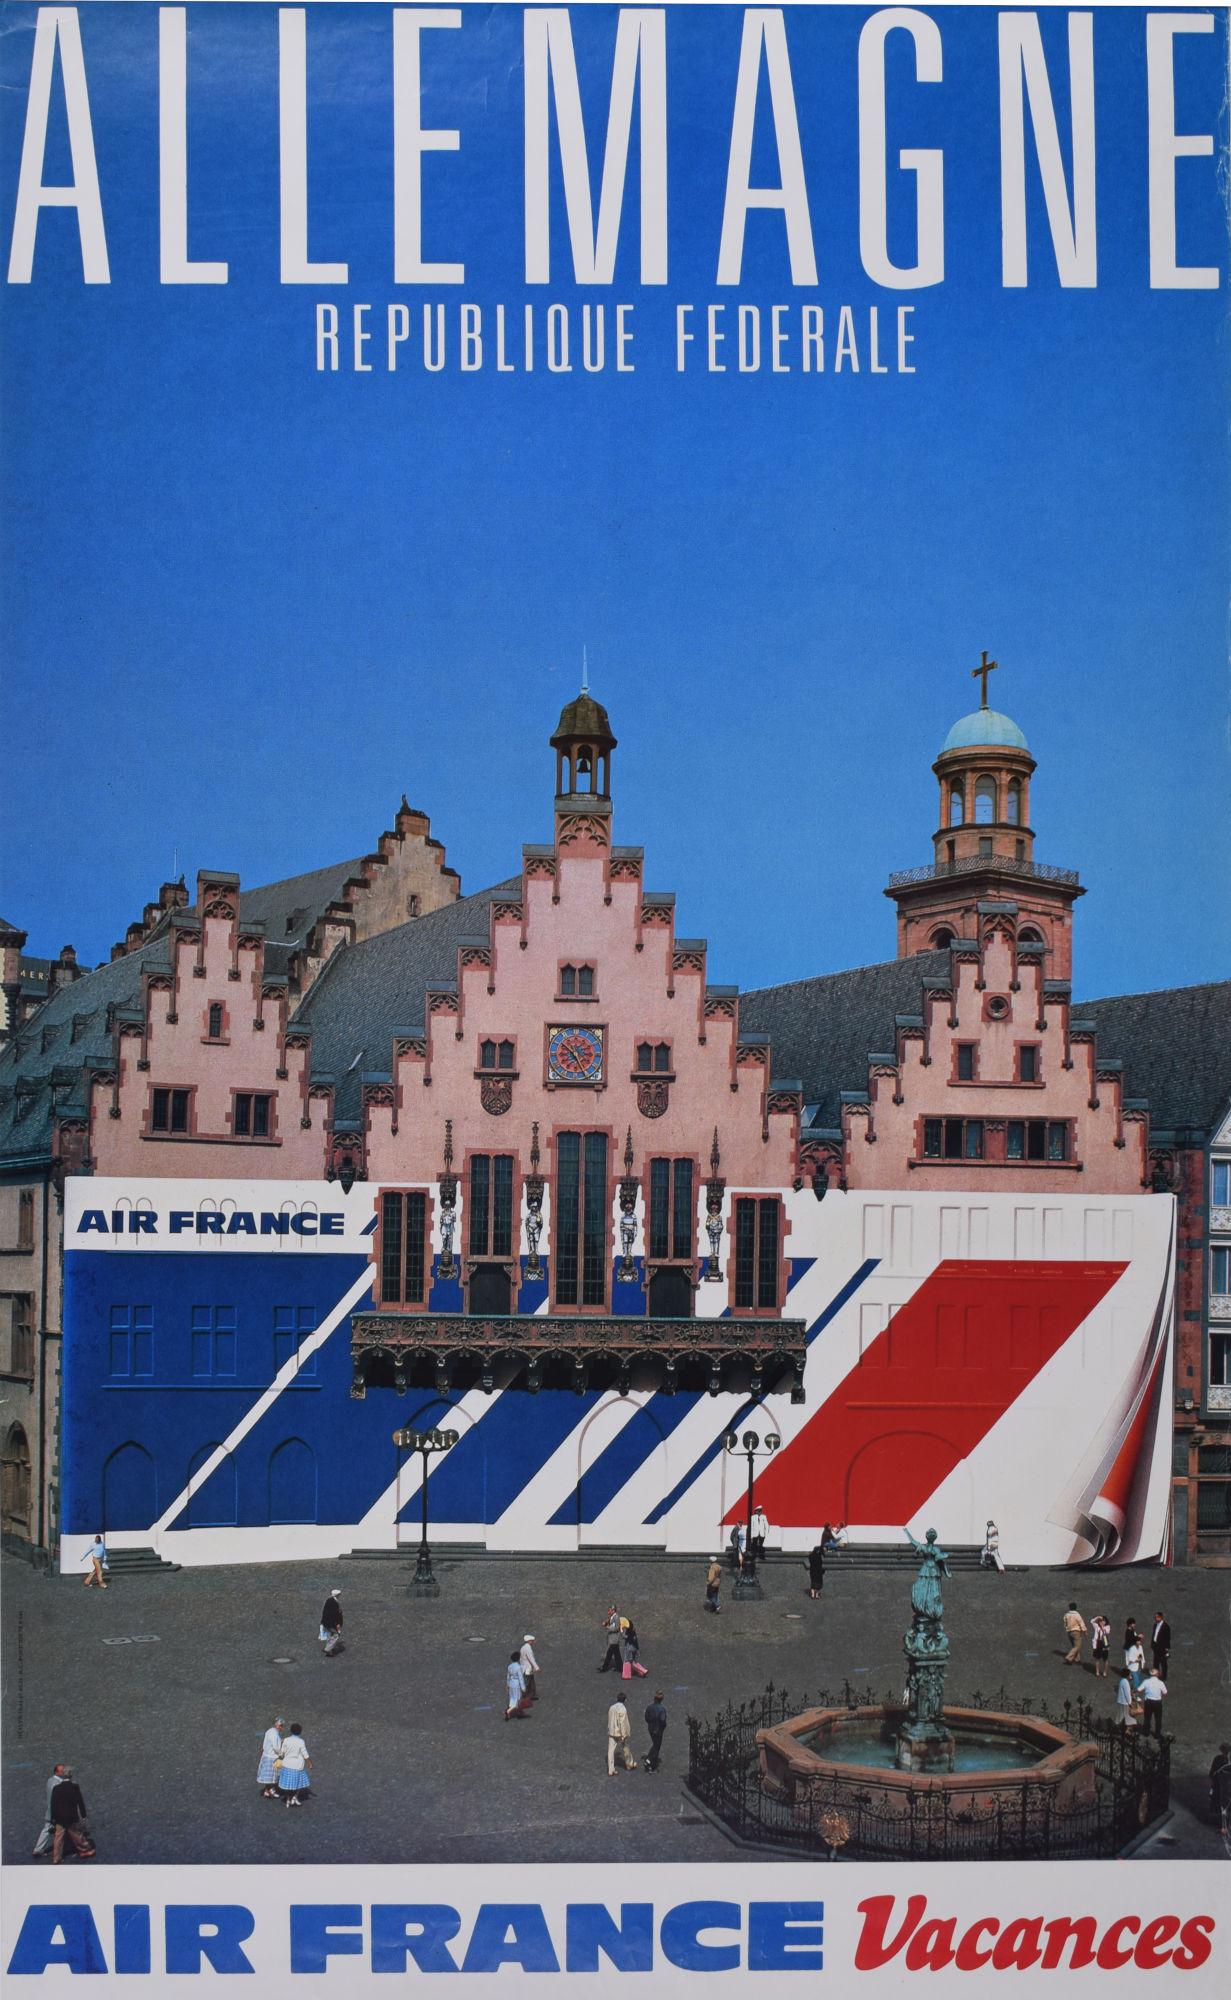 Air France Allemagne Germany original vintage travel poster Frankfurt Römer - Print by Unknown